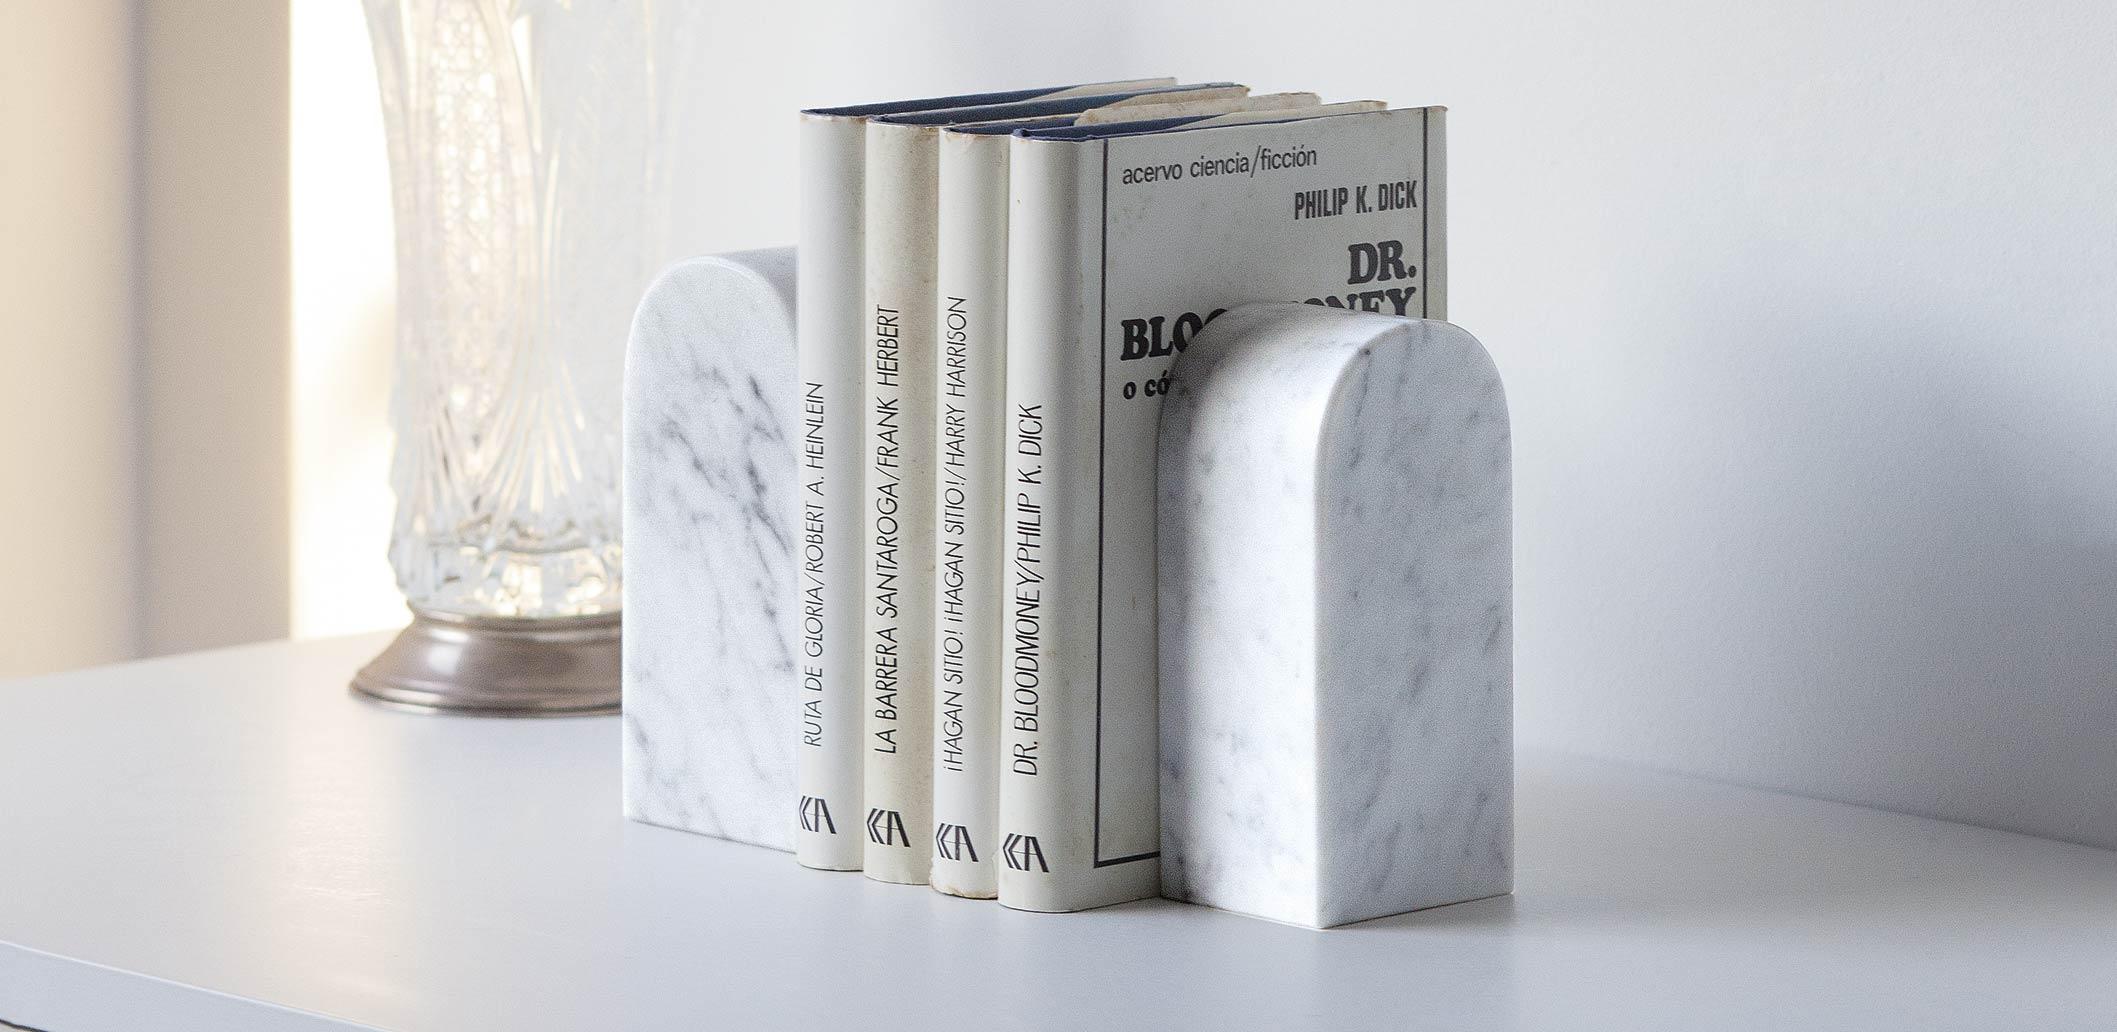 Le serre-livre marblelous small est un serre-livre de style minimaliste en marbre de Carrare traité. Le produit consiste en un bloc prismatique en marbre massif.